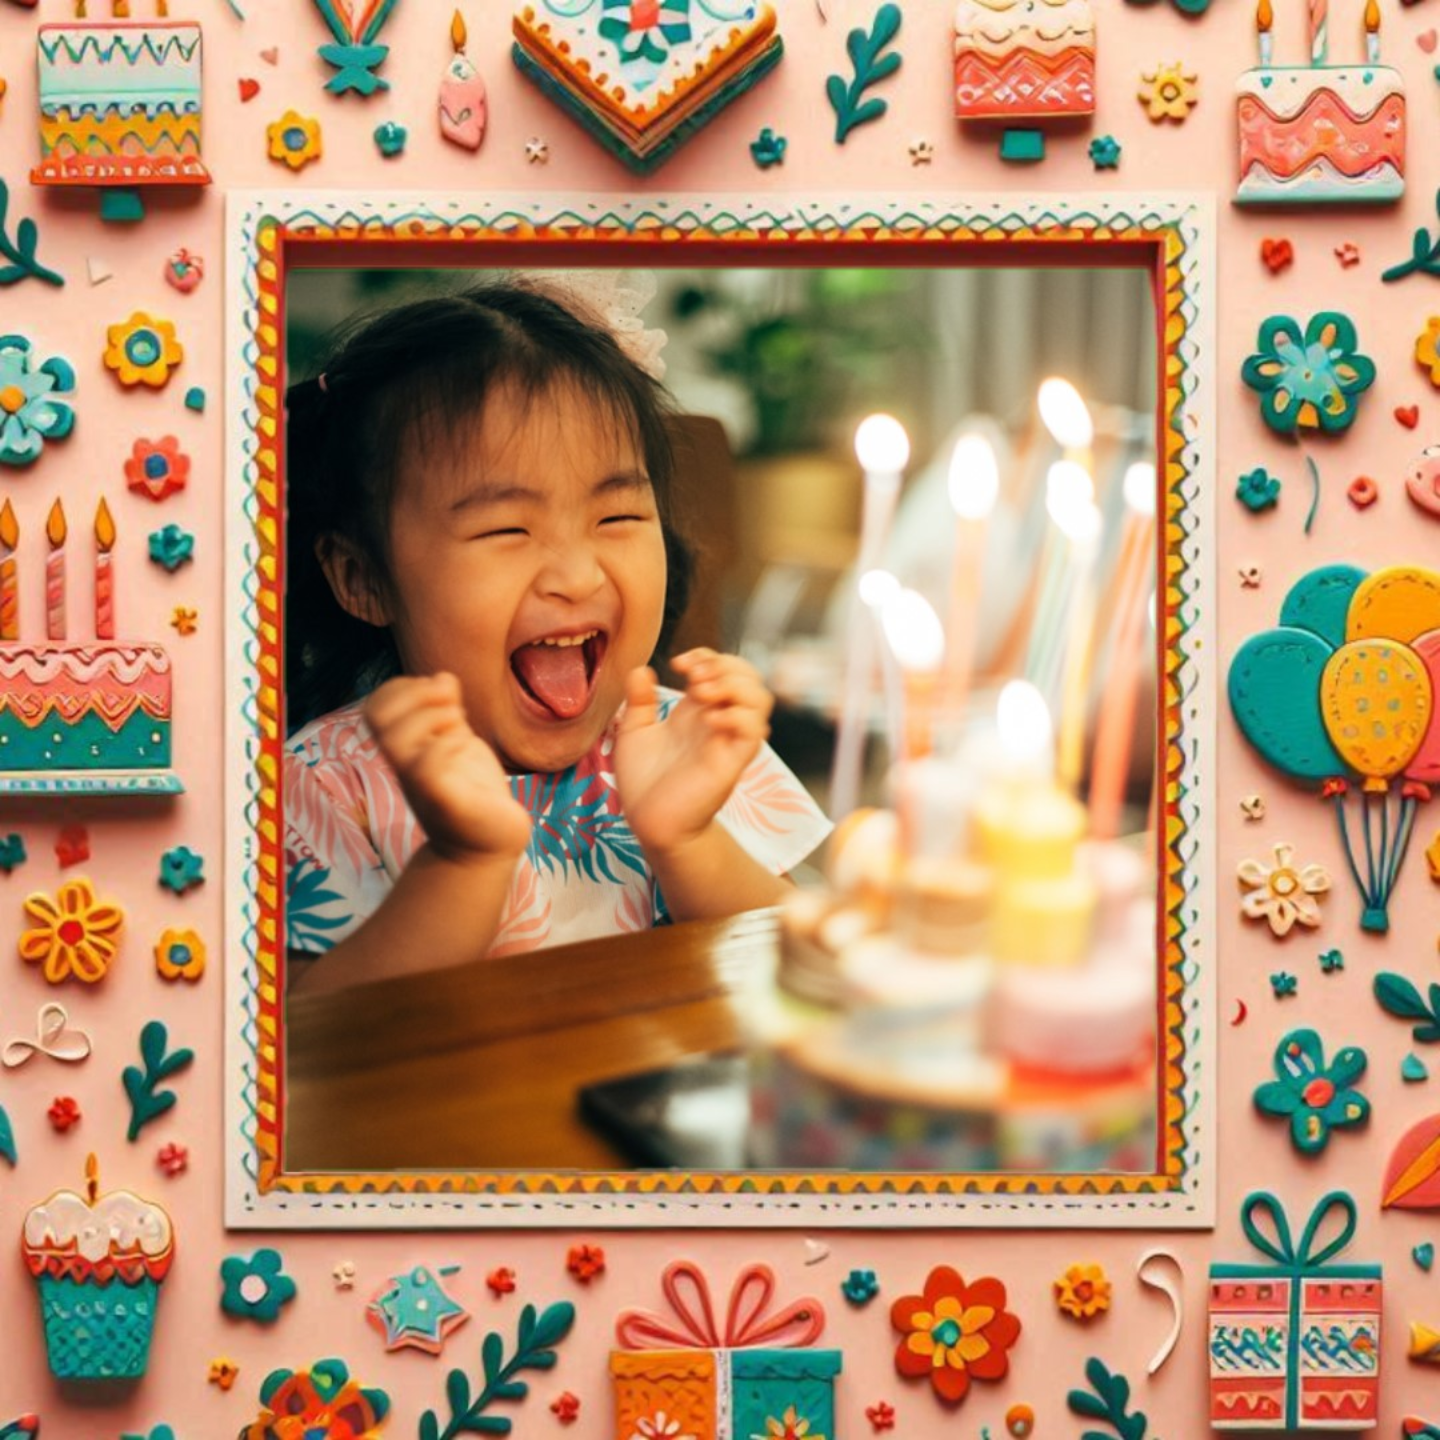 Frame showcasing a little girl's birthday celebration